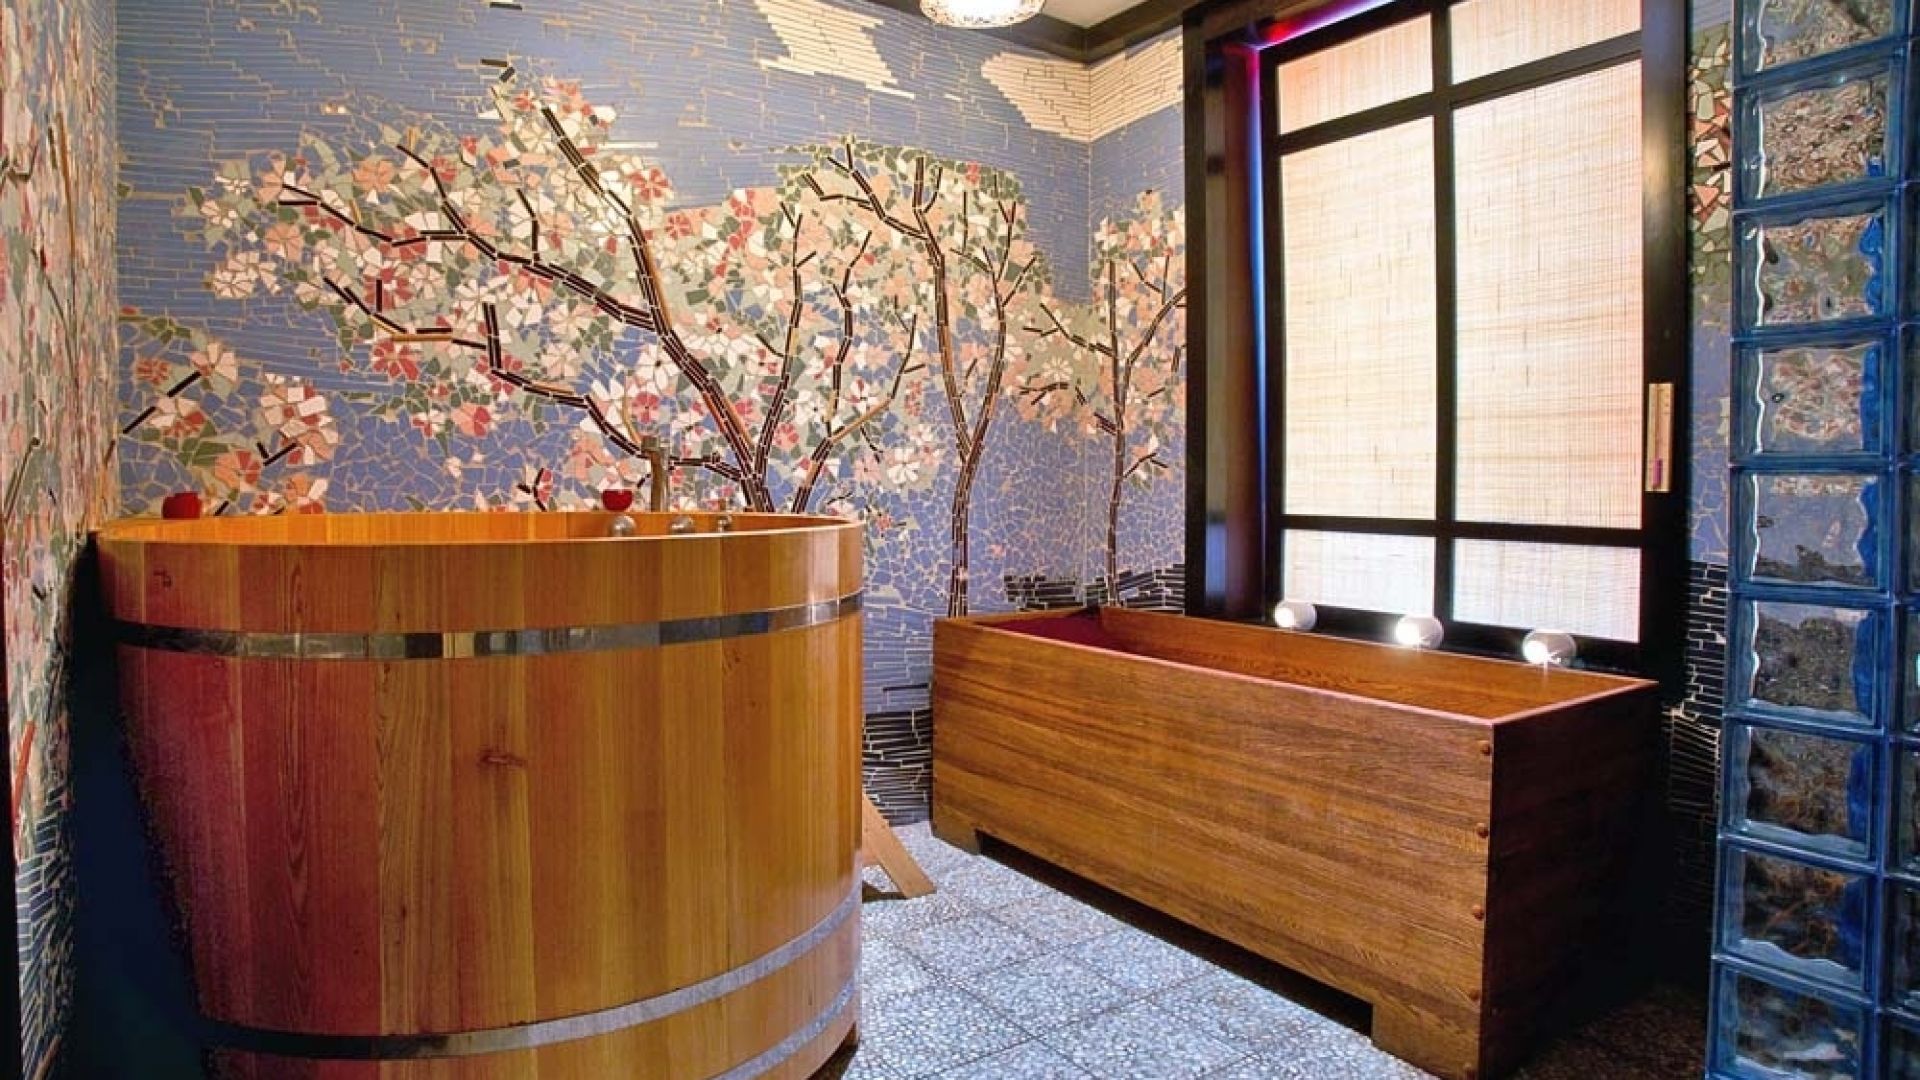 Баня японская офуро фурако с внешней дровяной печью. японские бани: офуро, фурако и сэнто – их особенности и эффективность процедур омовения